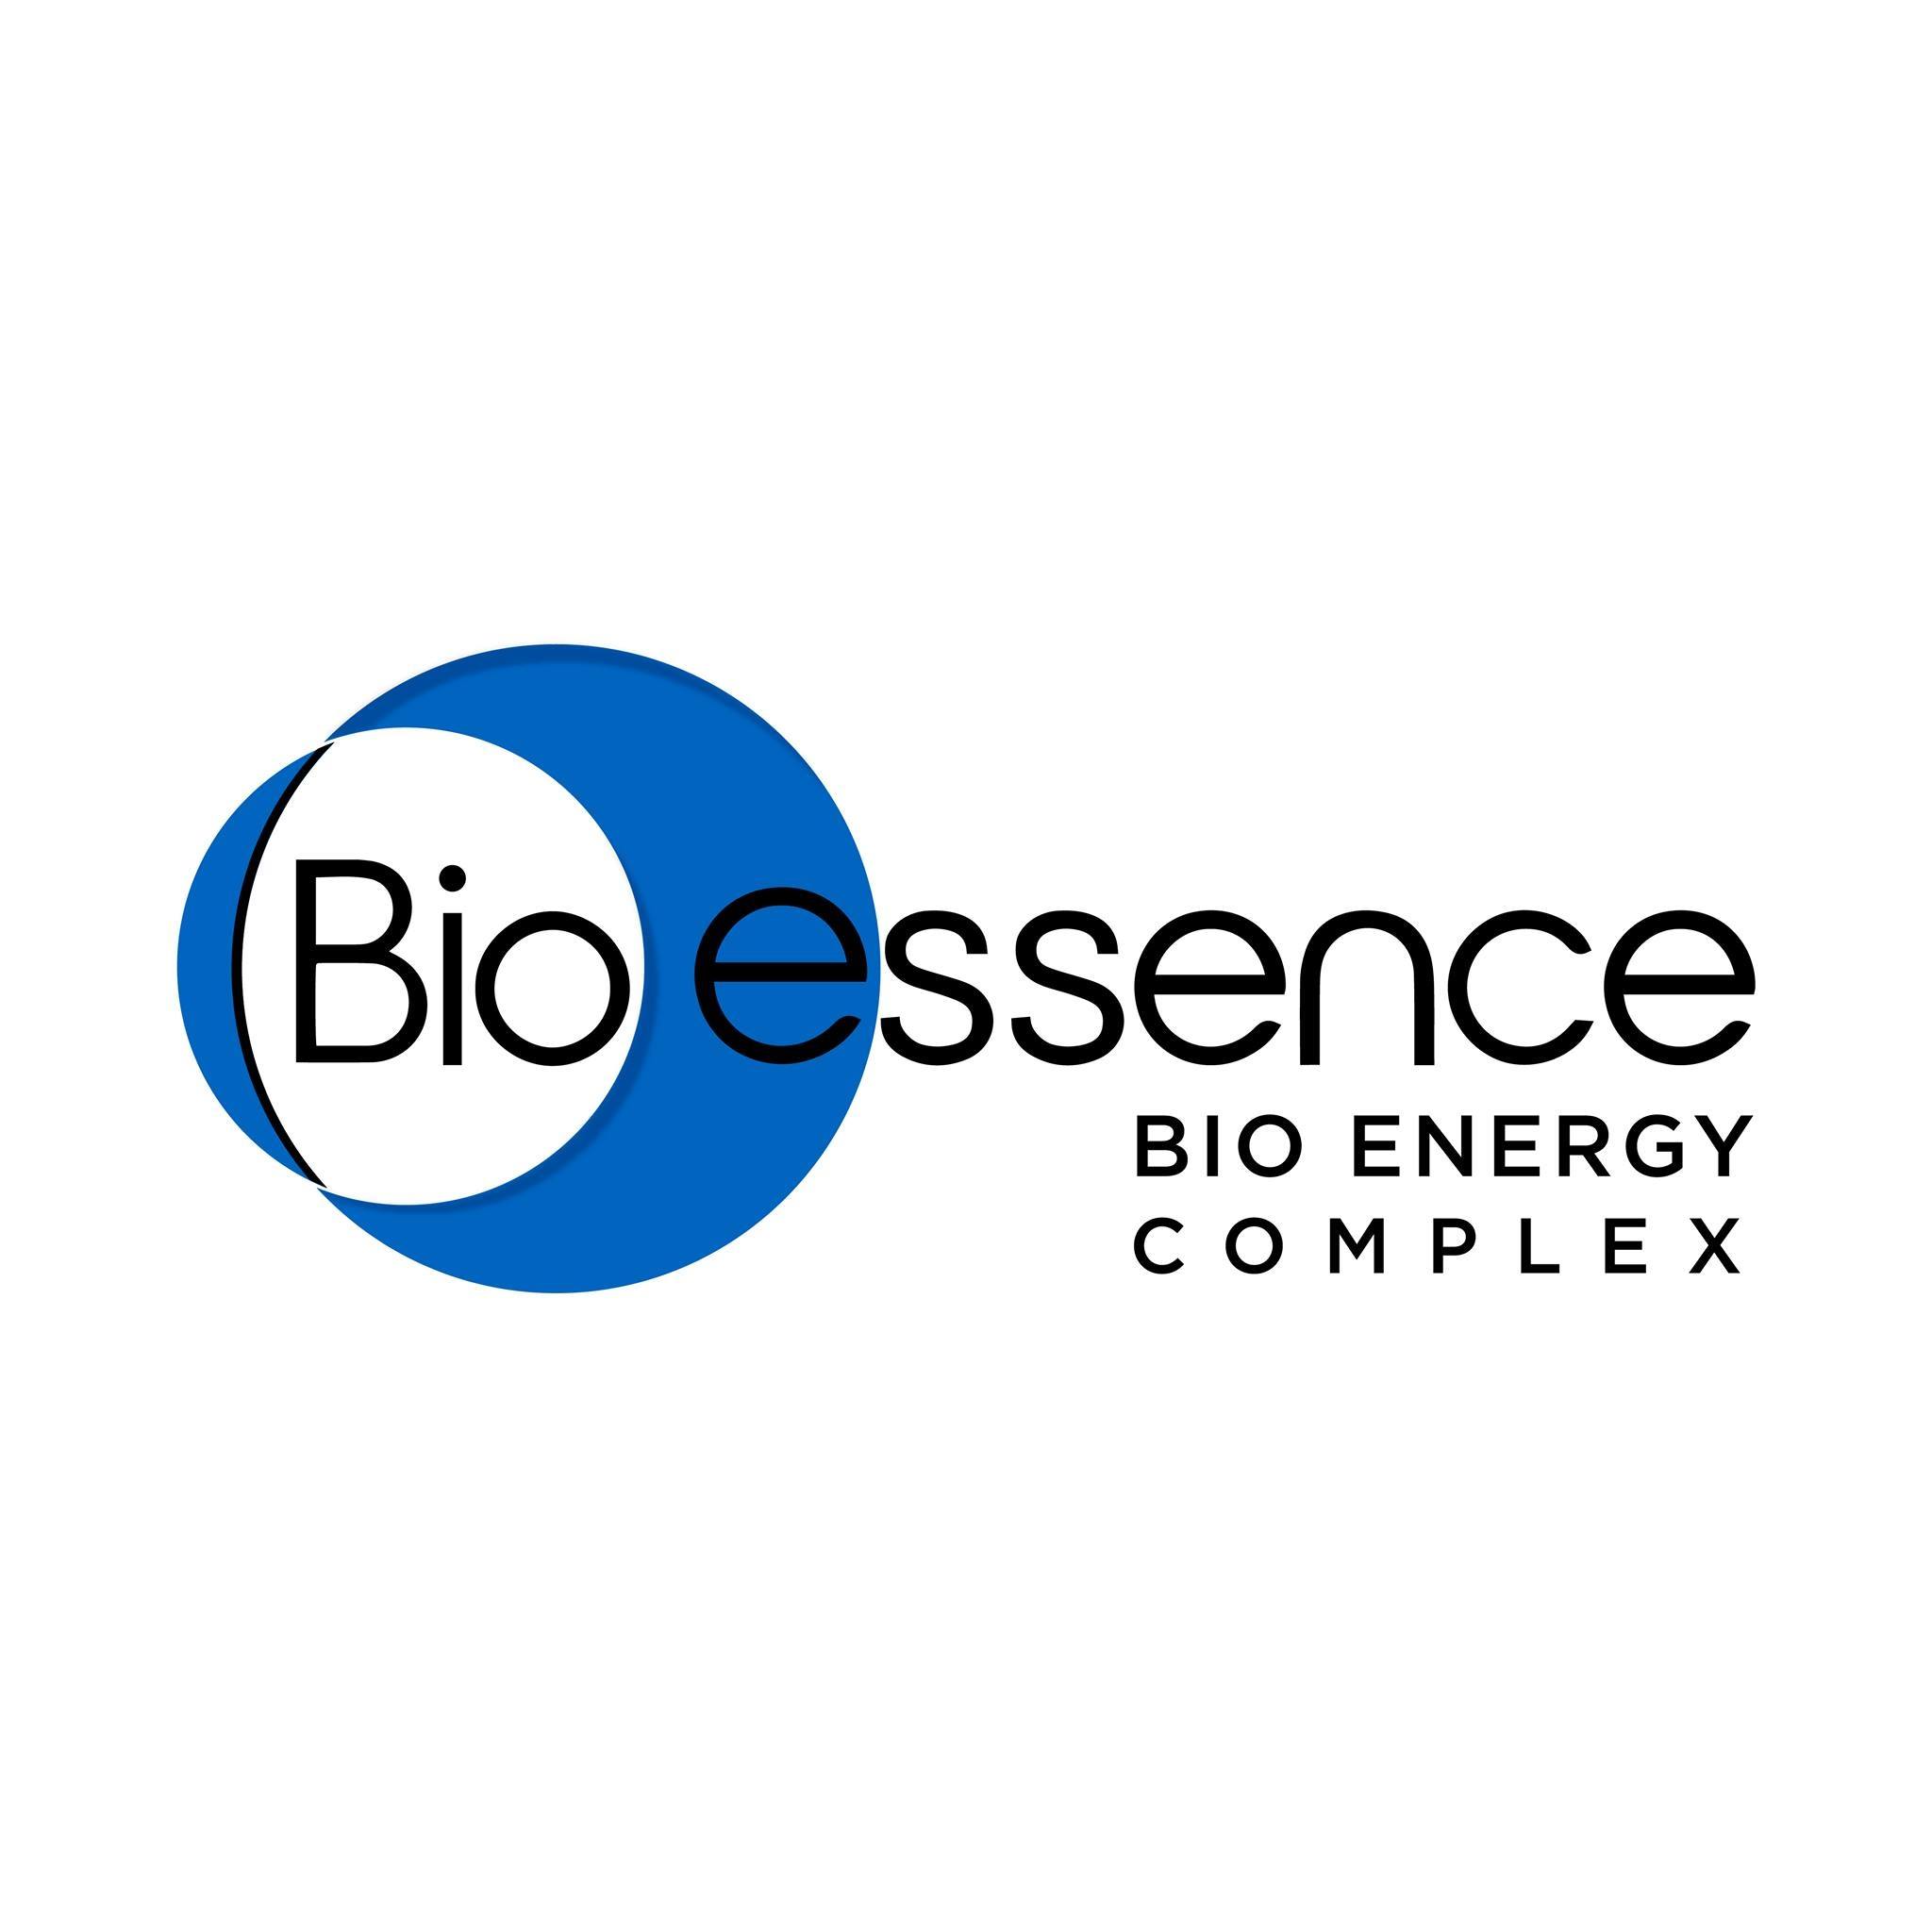 Bio-essence